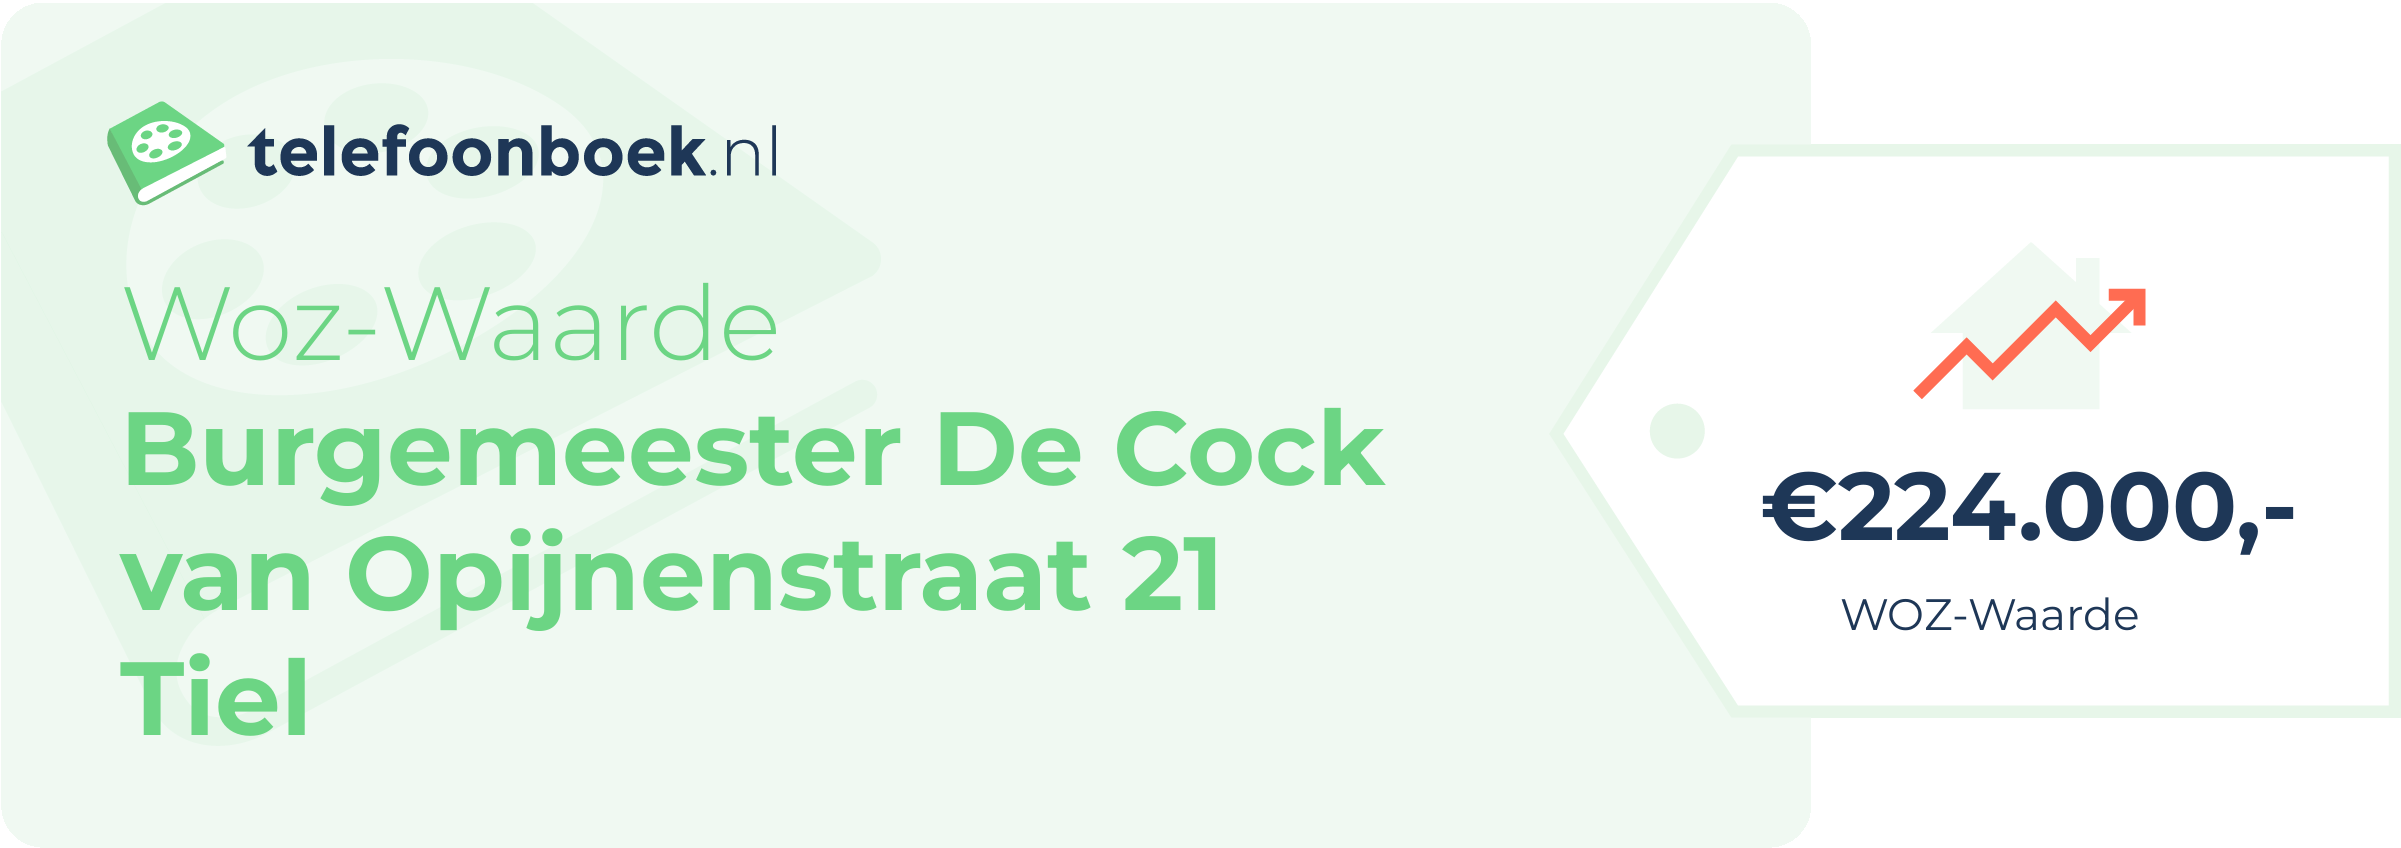 WOZ-waarde Burgemeester De Cock Van Opijnenstraat 21 Tiel